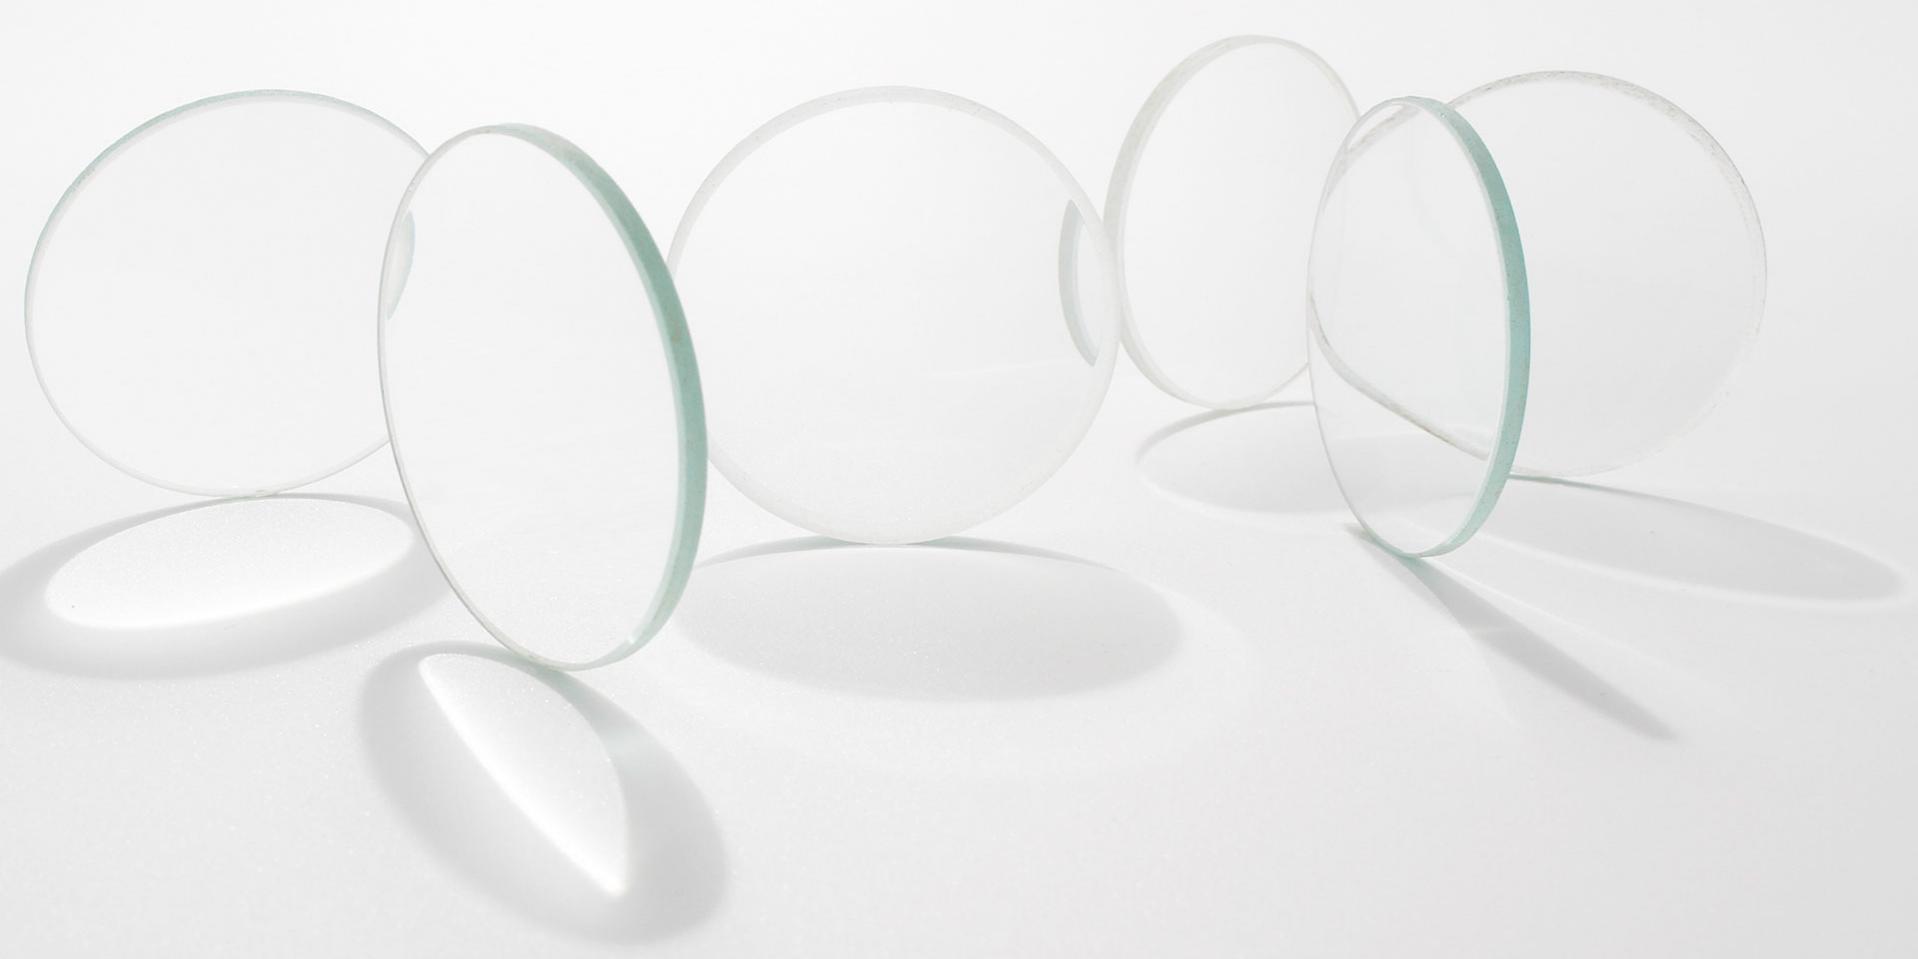 Das Geheimnis des perfekten Brillenglasdesigns